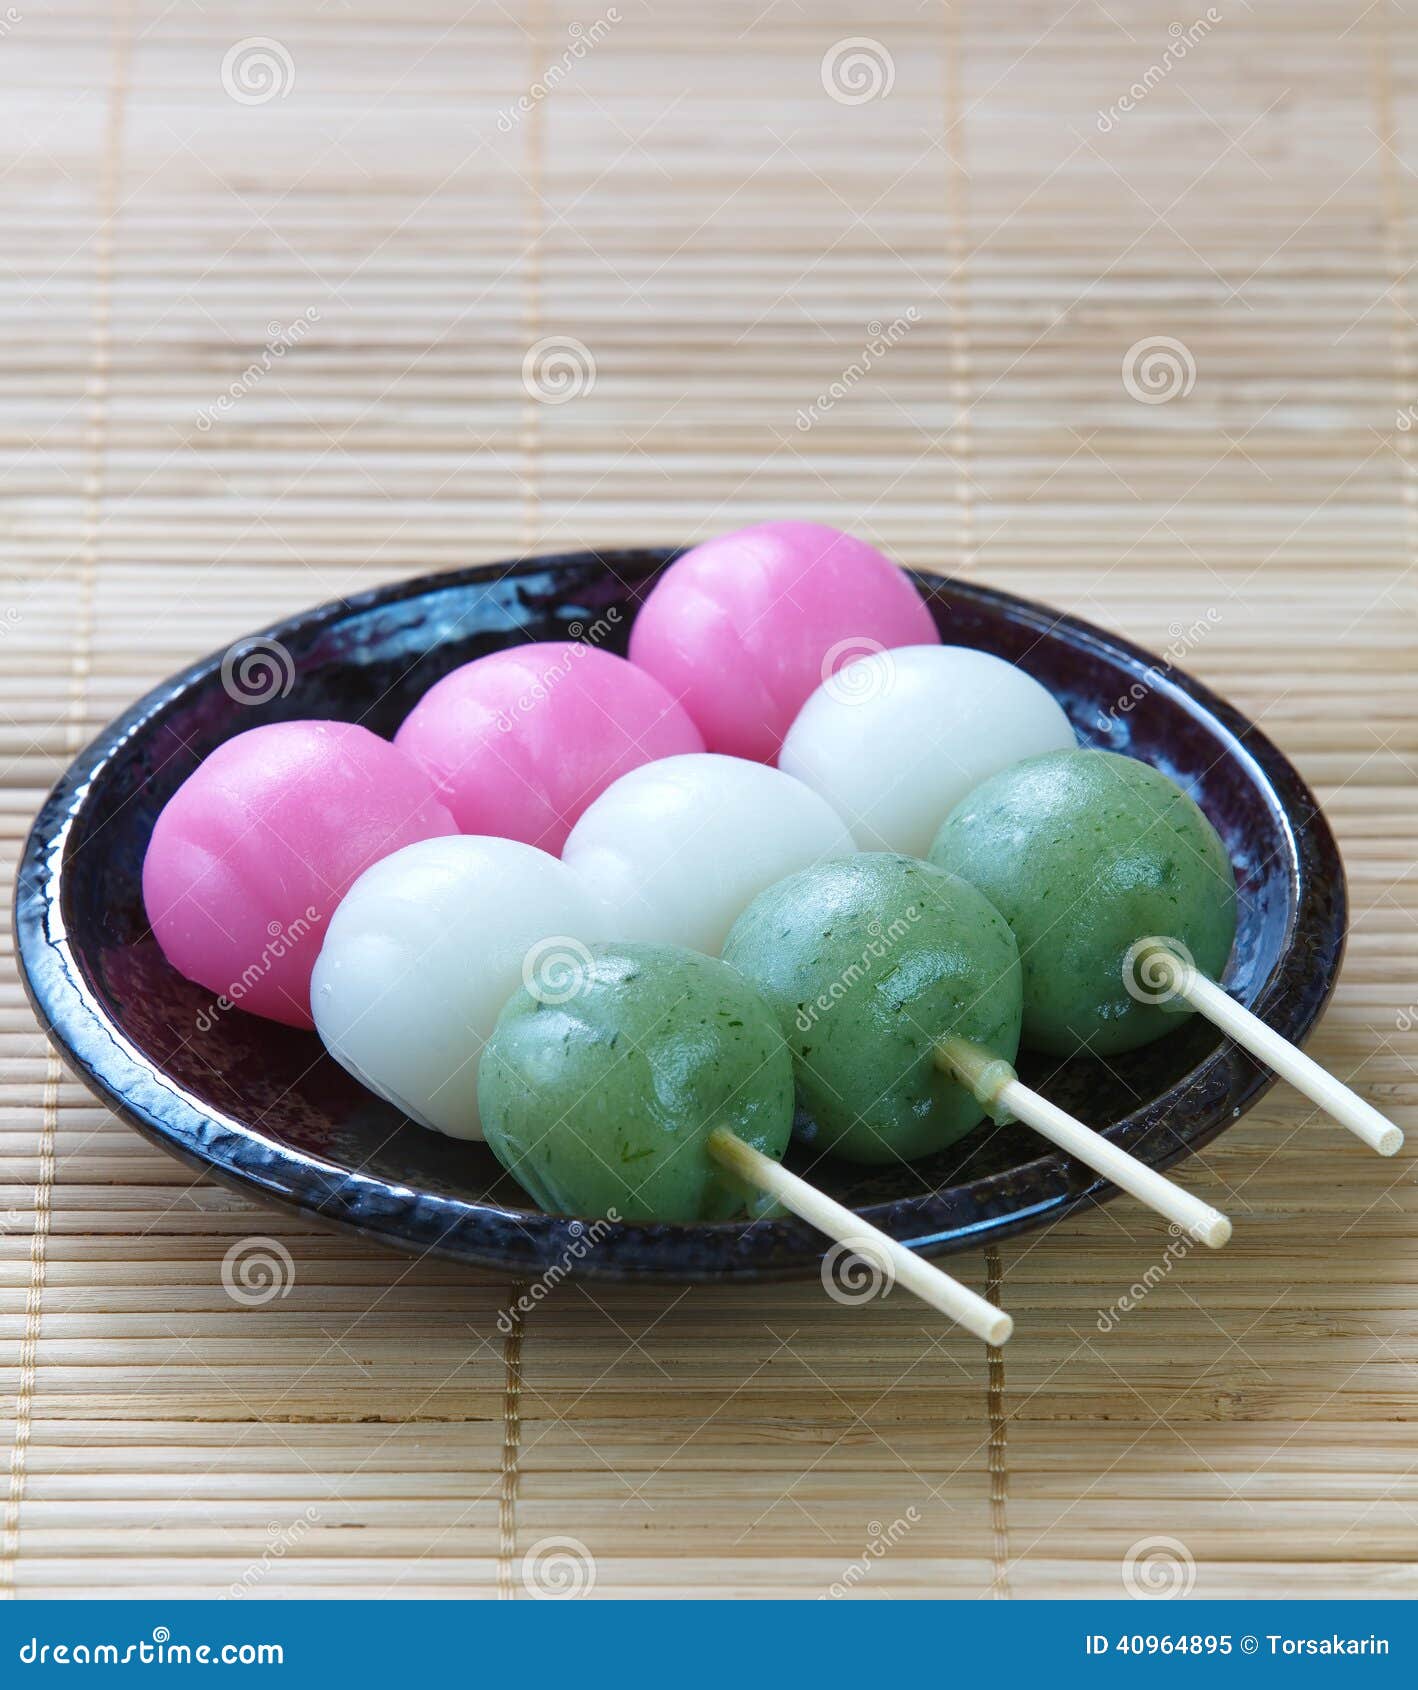 Boulette Et Bonbon Japonais De Dango Image stock - Image du blanc